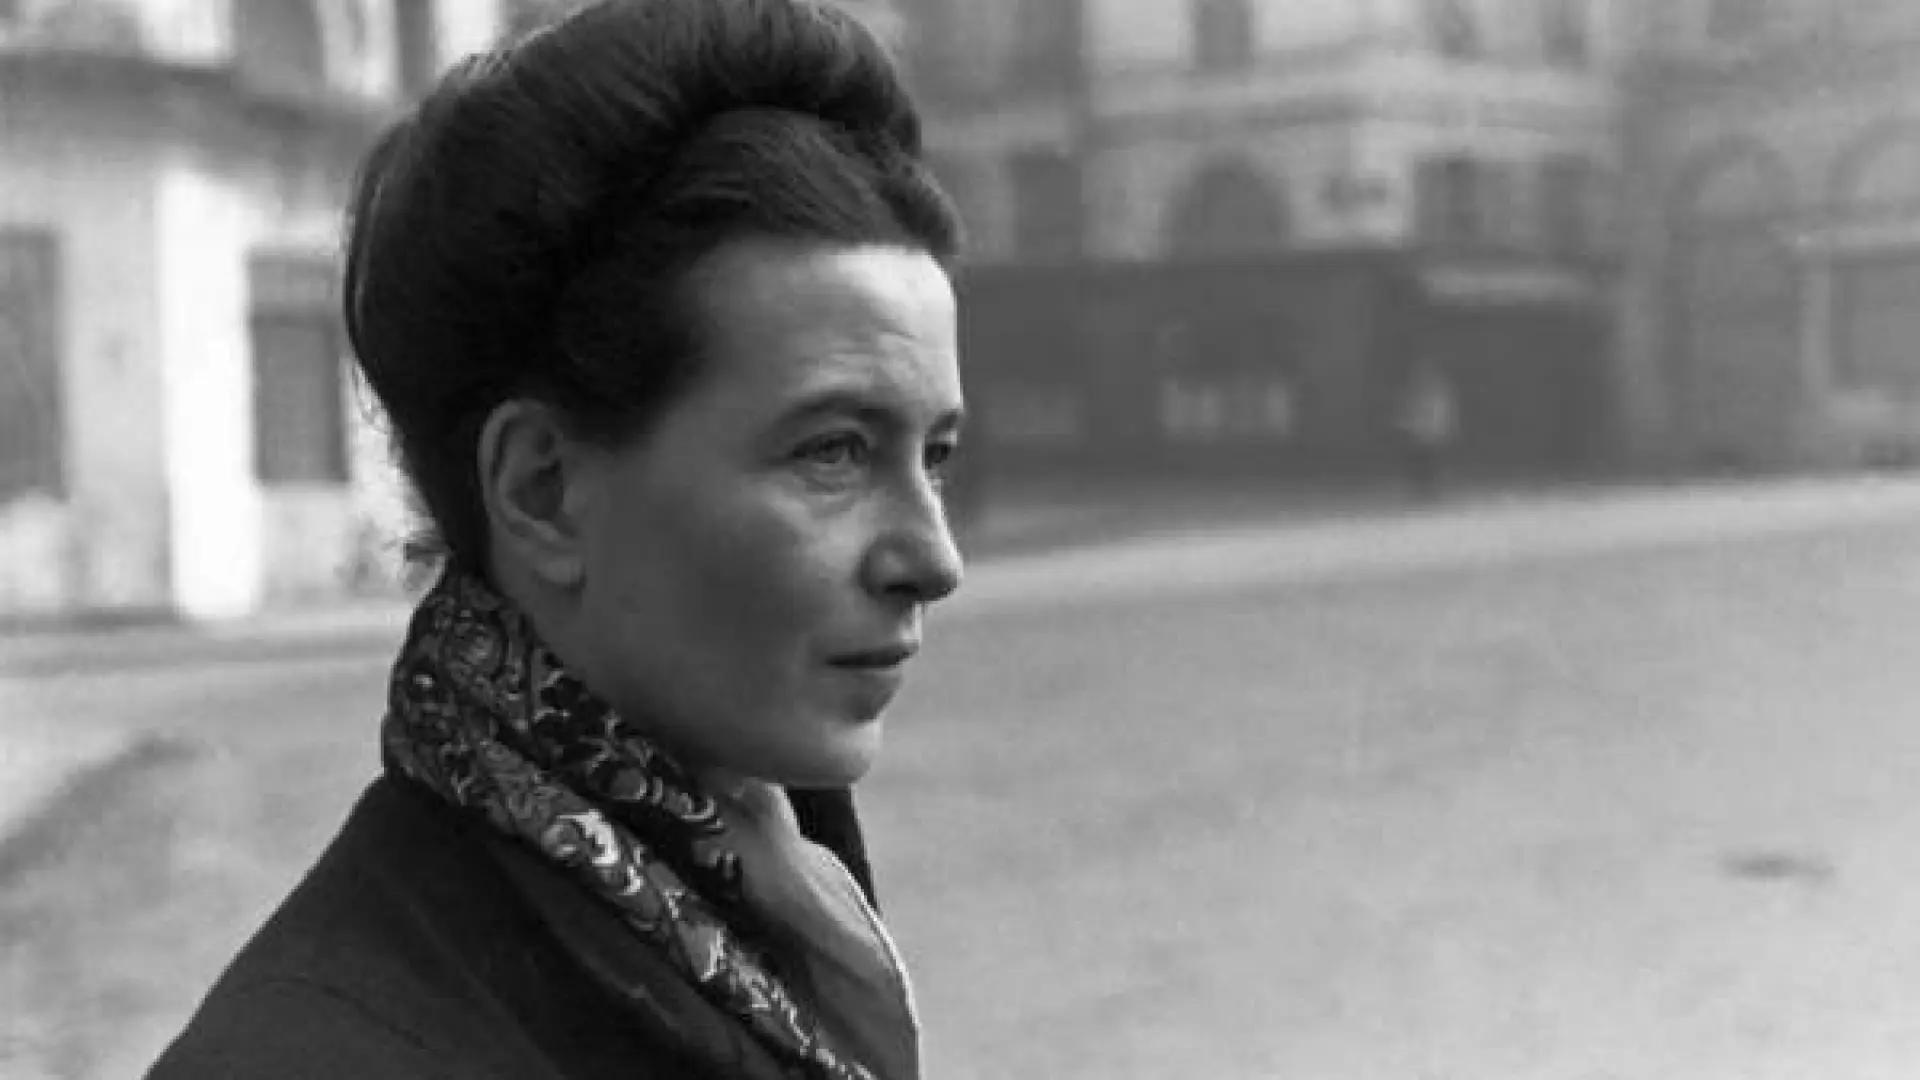 la invitada simone de beauvoir resumen - Qué es el amor para Simone de Beauvoir